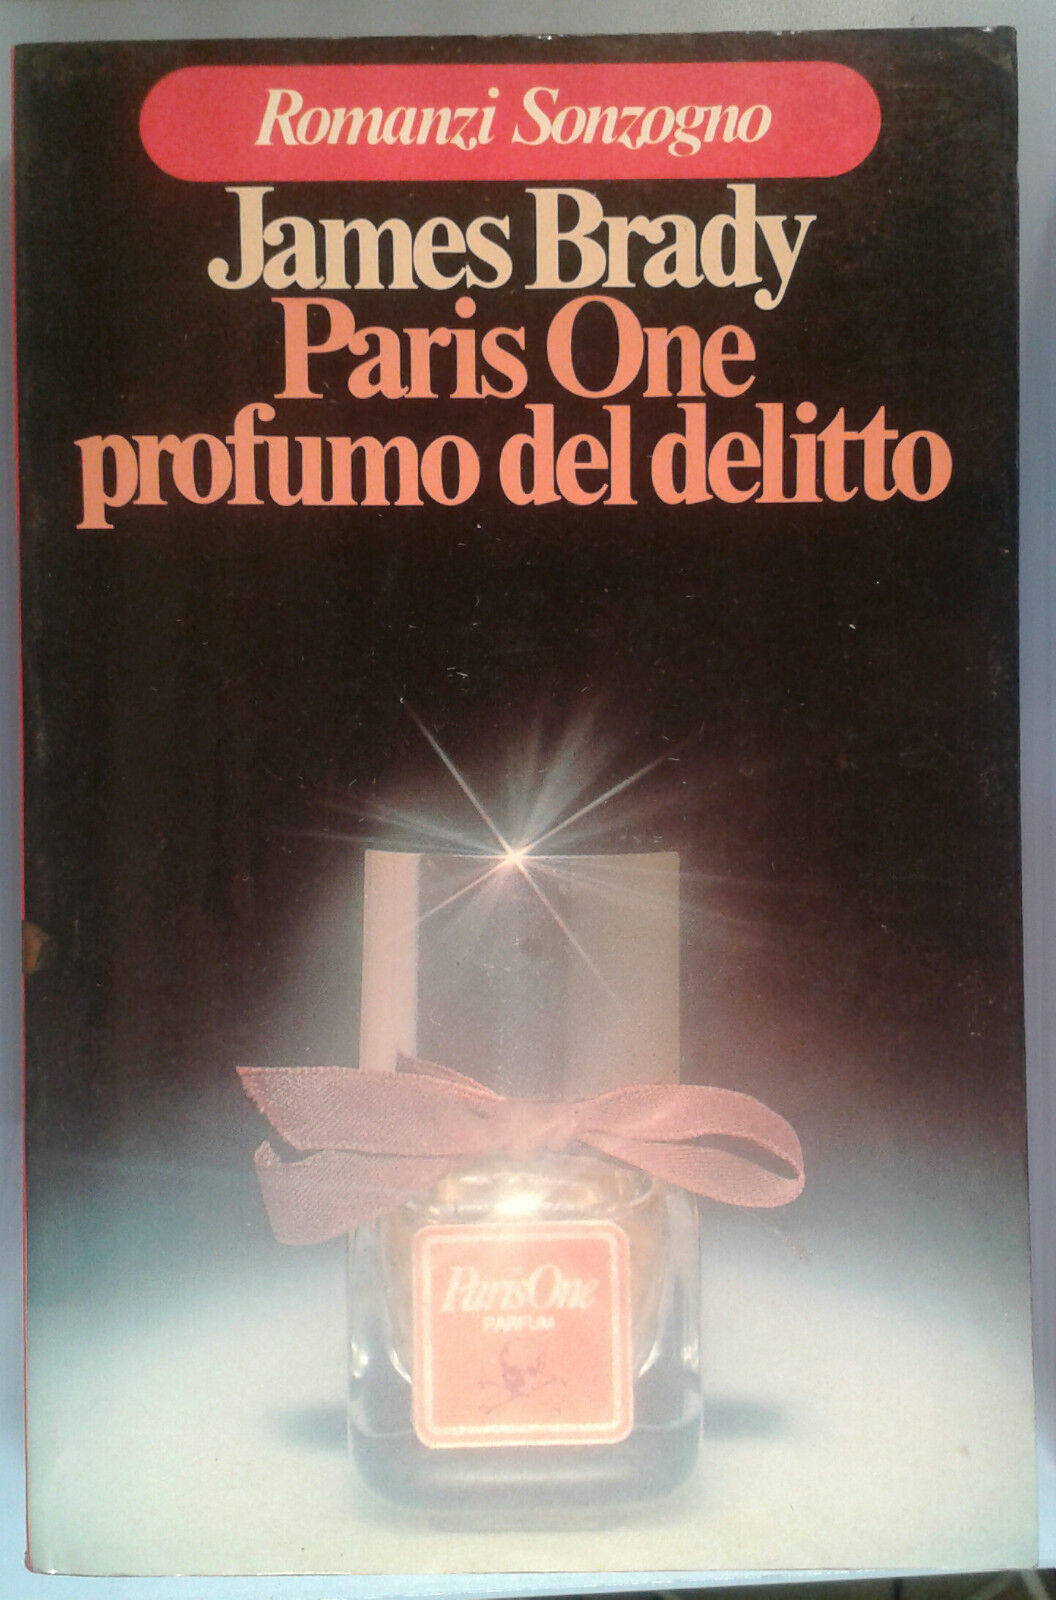 Paris One profumo del delitto - James Brady - SONZOGNO -  1979 - M libro usato